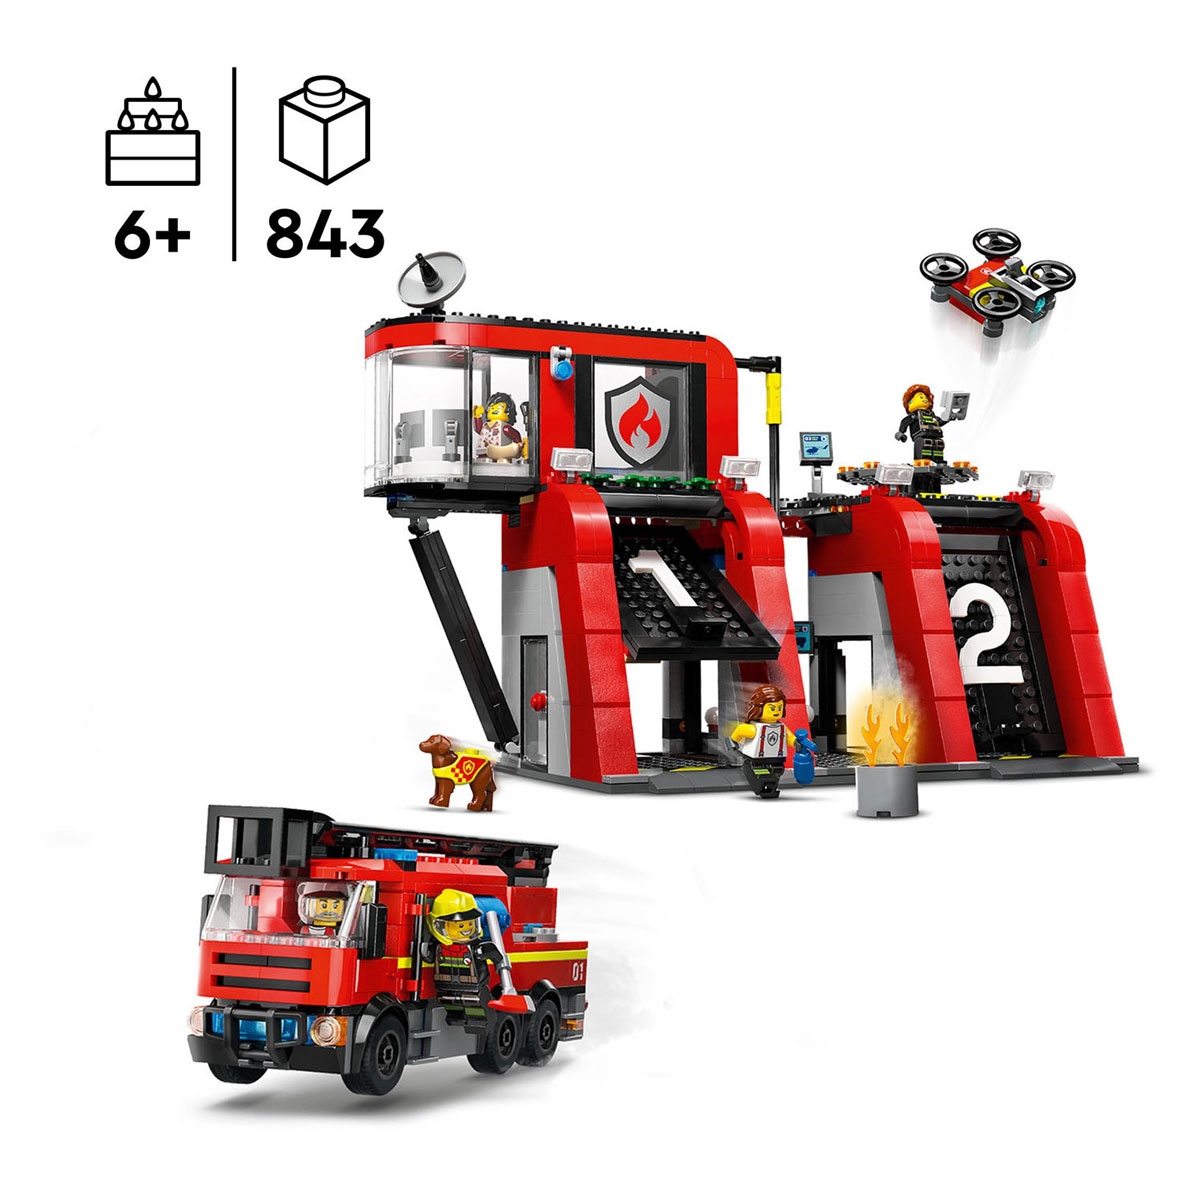 LEGO City 60414 La caserne de pompiers et le camion de pompiers